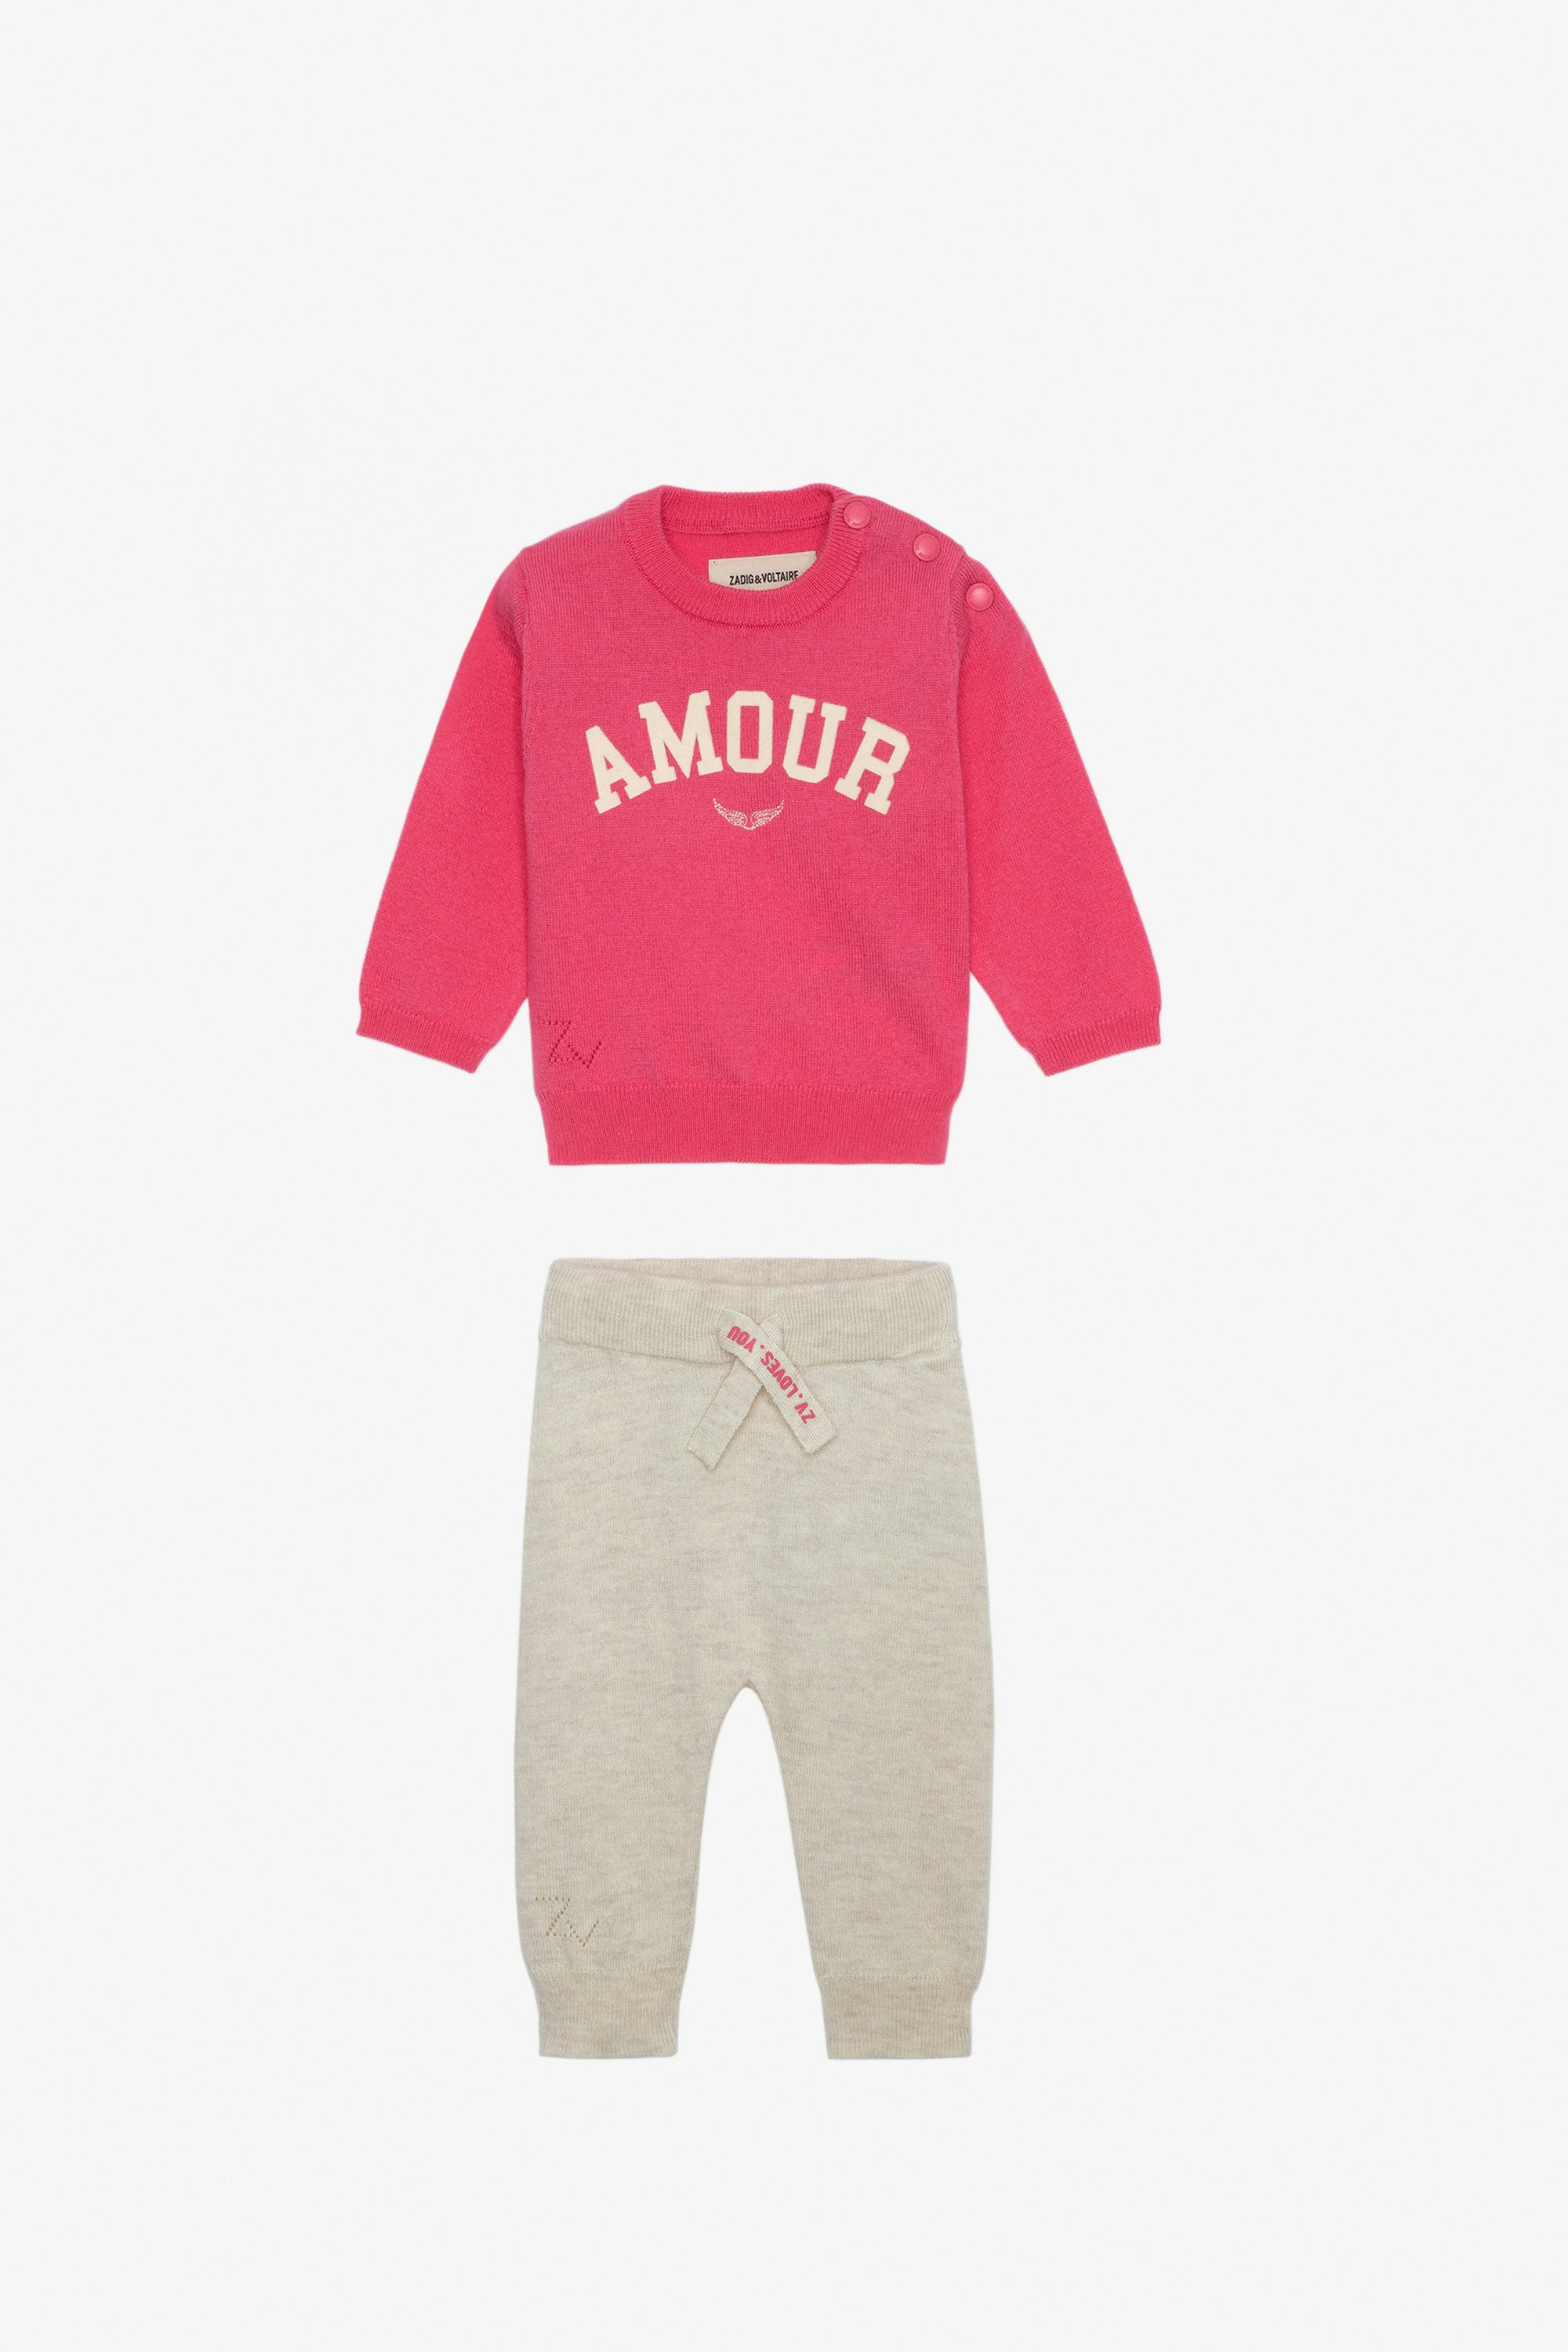 Completo Pona Neonato - Completo maglione con scritta "Amour" e pantaloni in maglia rosa da neonato.